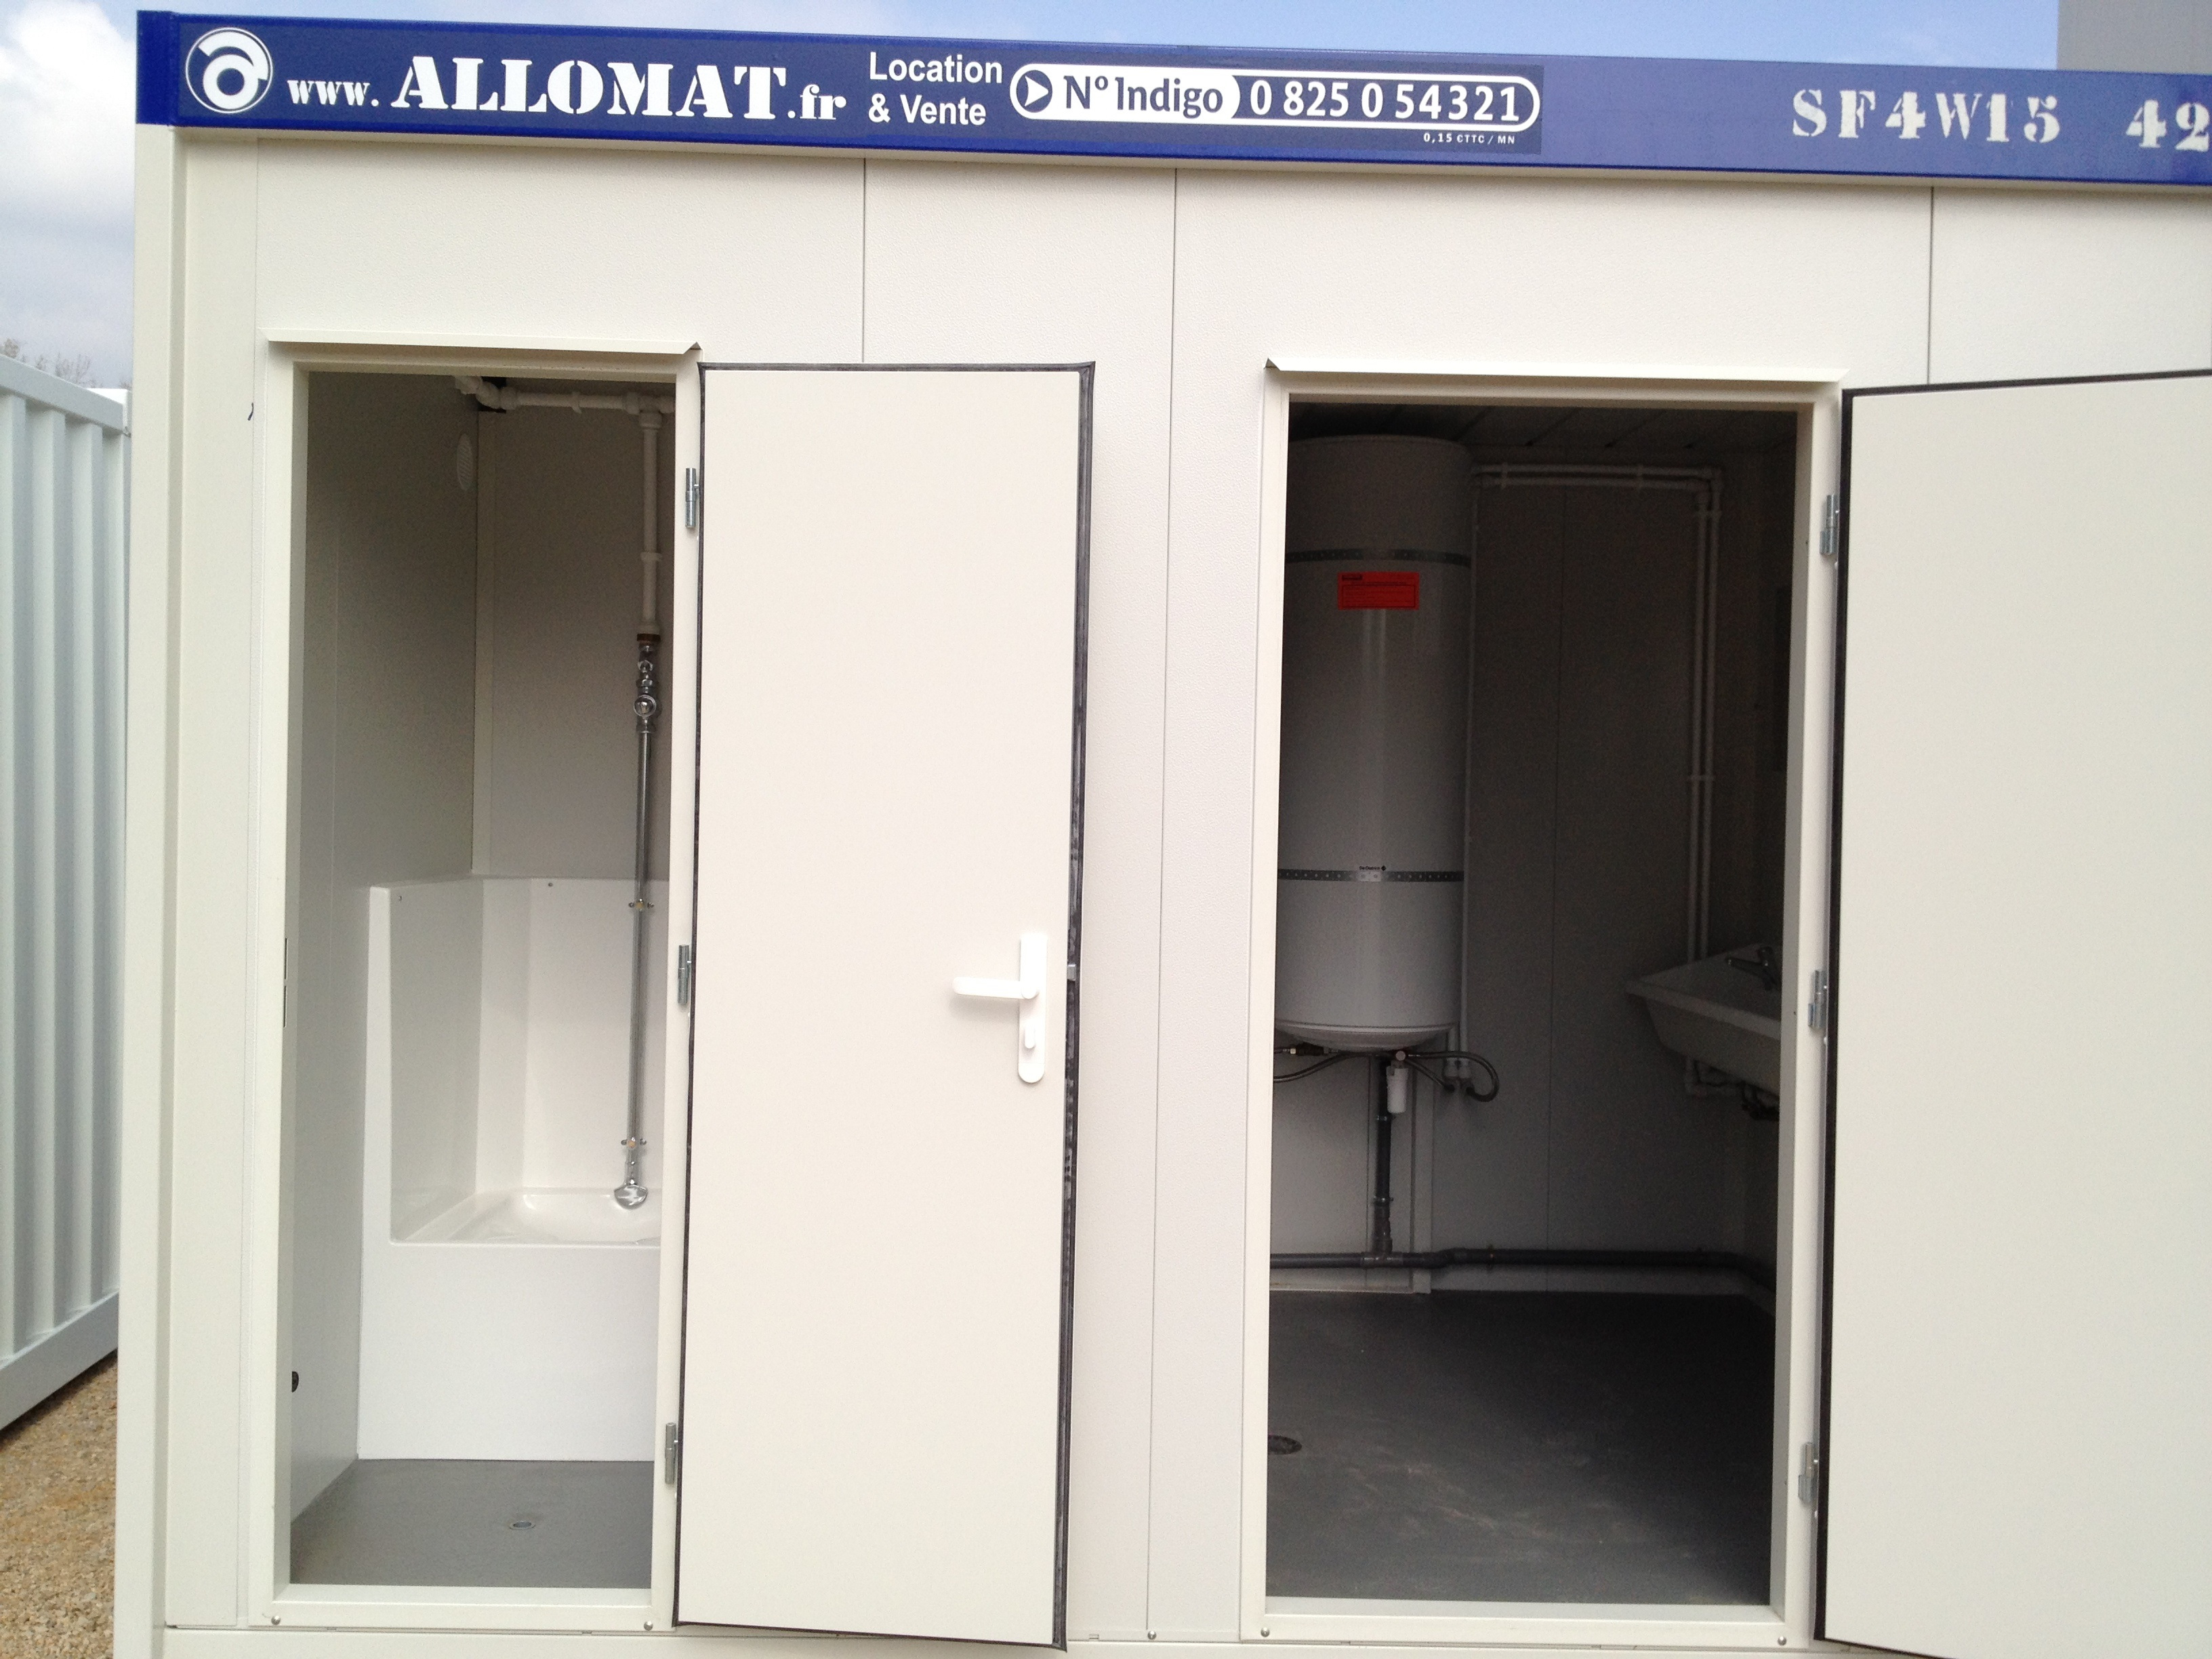 Un bungalow sanitaire avec 2 portes ouvertes, celle de gauche qui donne sur un WC à la turque et celle de droite sur un chauffe-eau 200L, avec à gauche un lavabo et une douche.